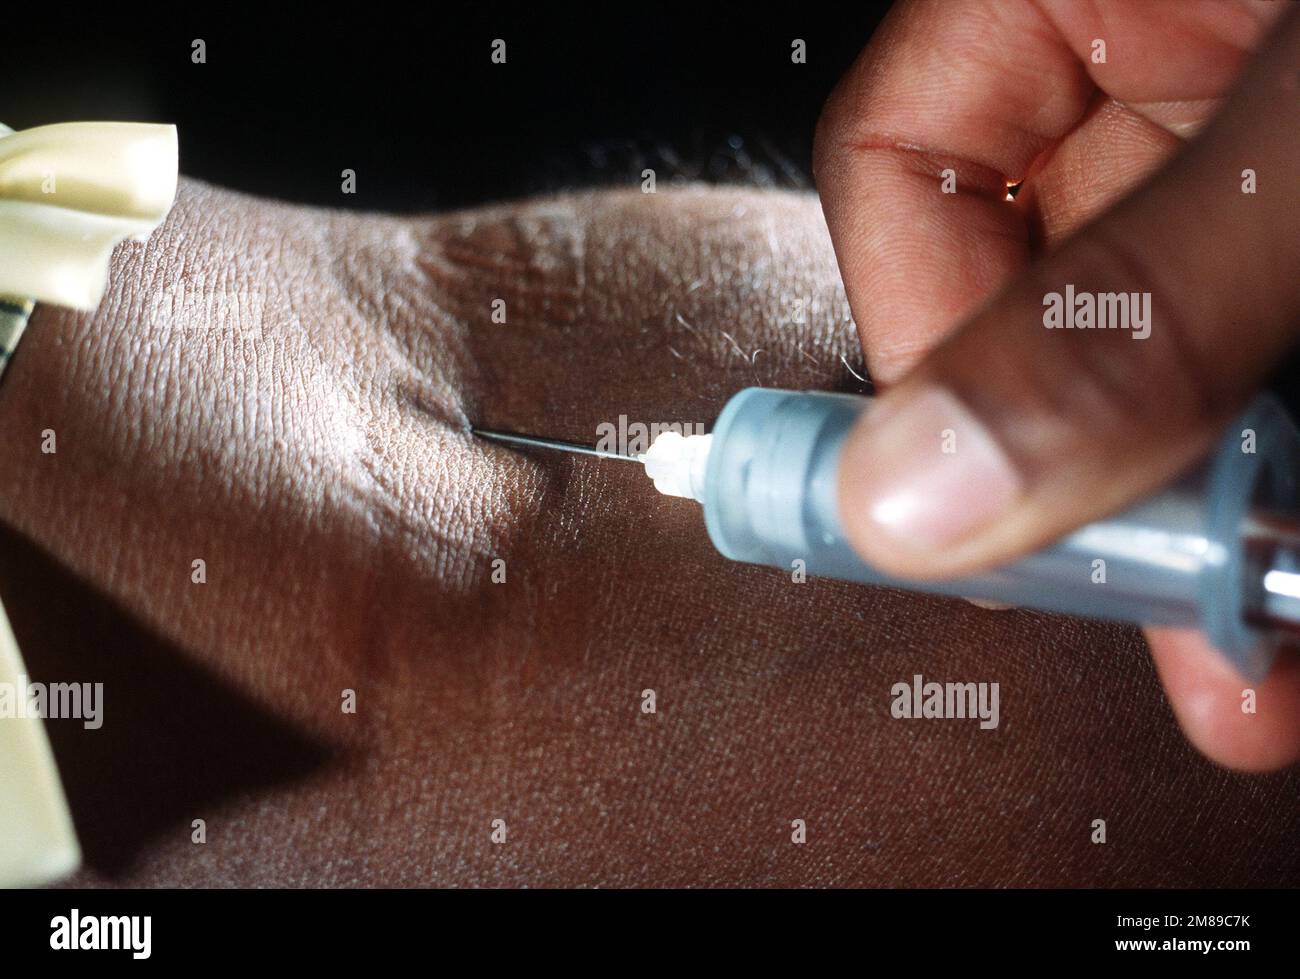 Un corpsman utilise une seringue pour prélever le sang d'un patient à des fins de test à l'hôpital naval. Base: Naval Air Station, Jacksonville État: Floride (FL) pays: Etats-Unis d'Amérique (USA) Banque D'Images